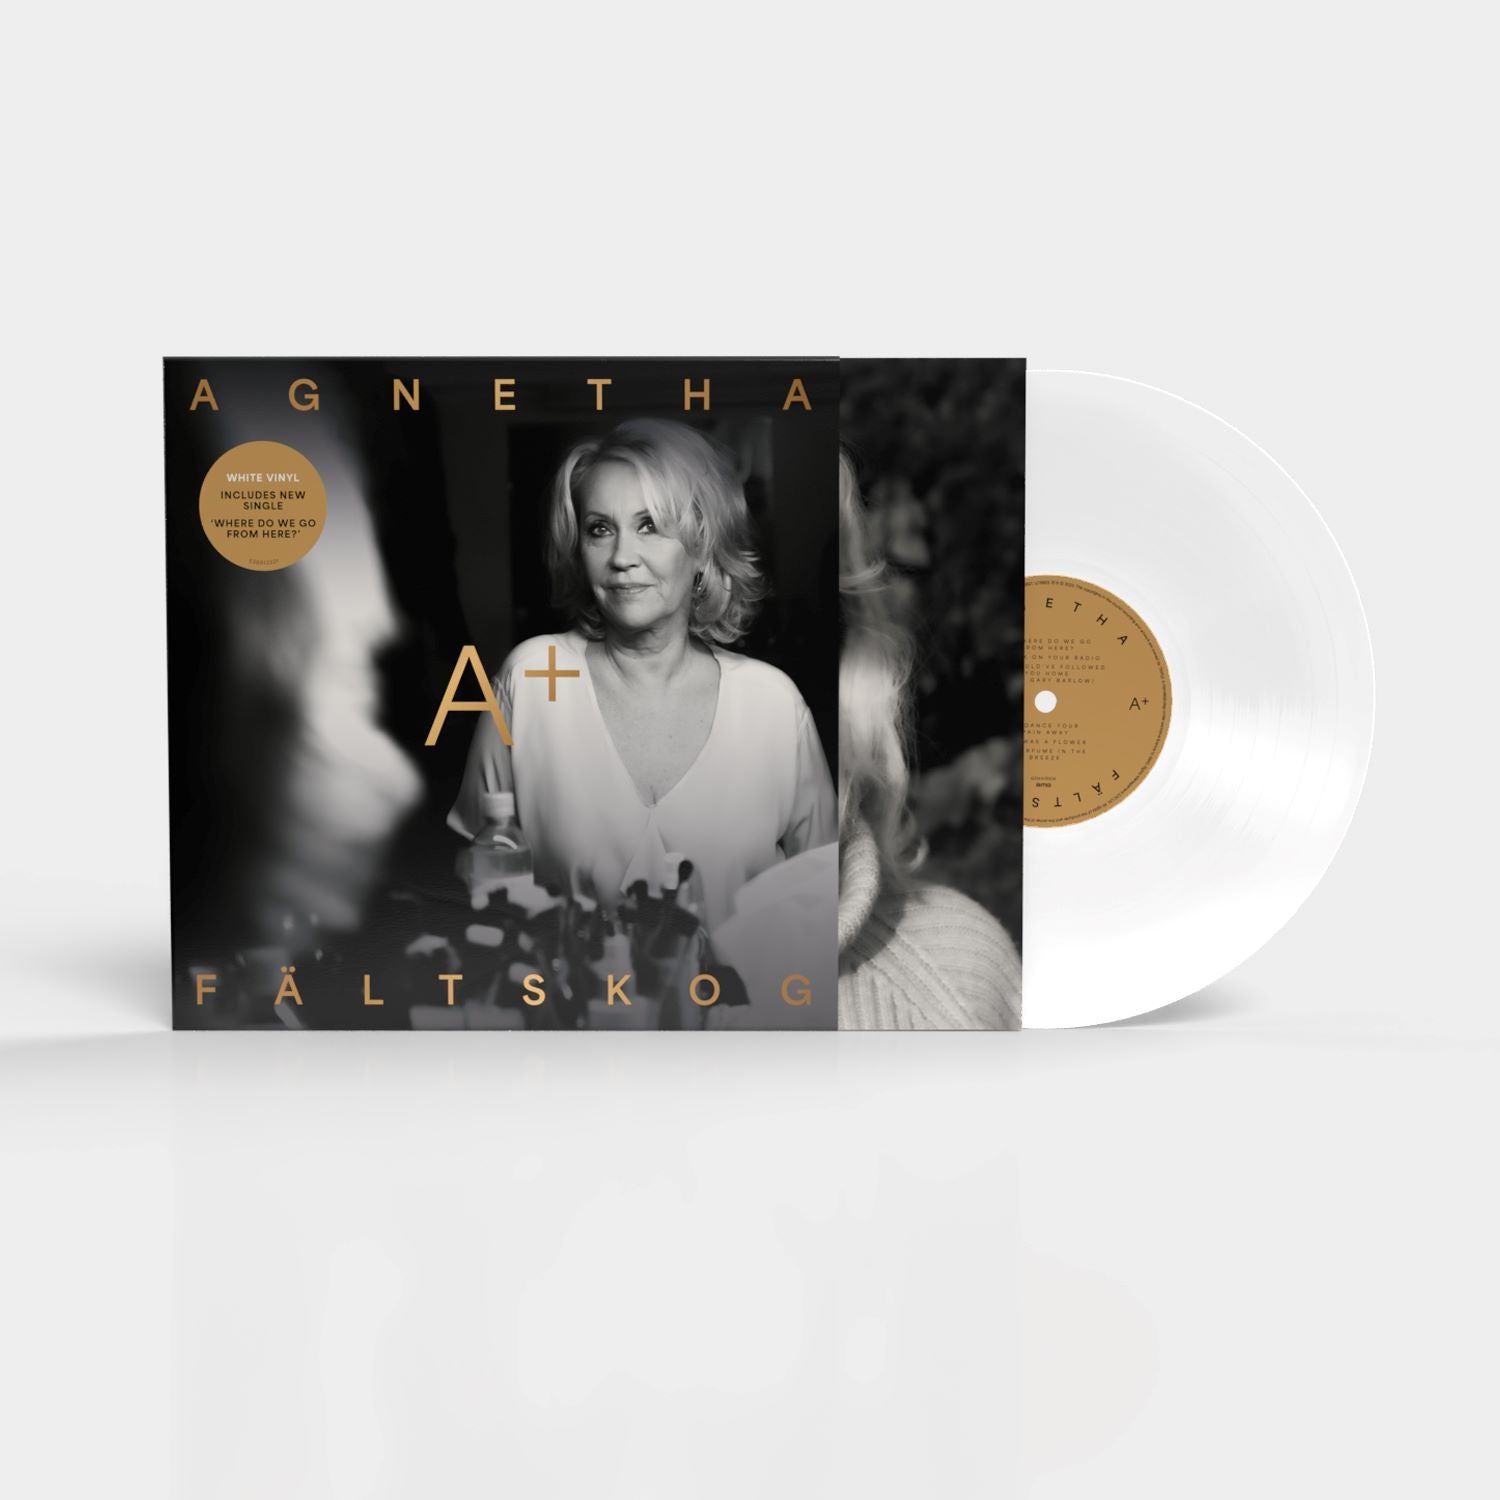 Agnetha Fältskog  - A+: White Vinyl LP